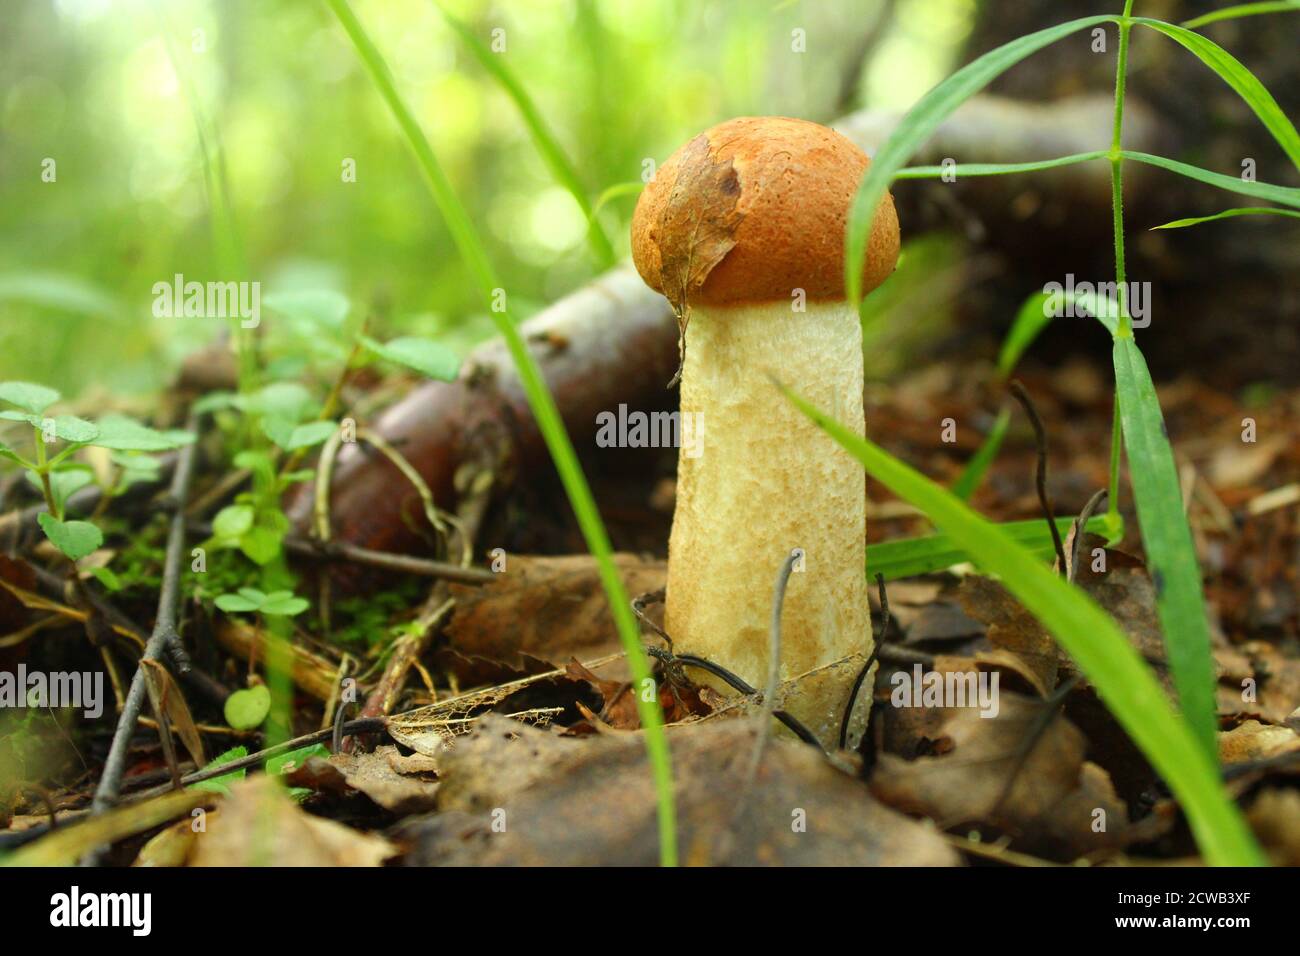 Primo piano di un piccolo fungo nei boschi Foto Stock